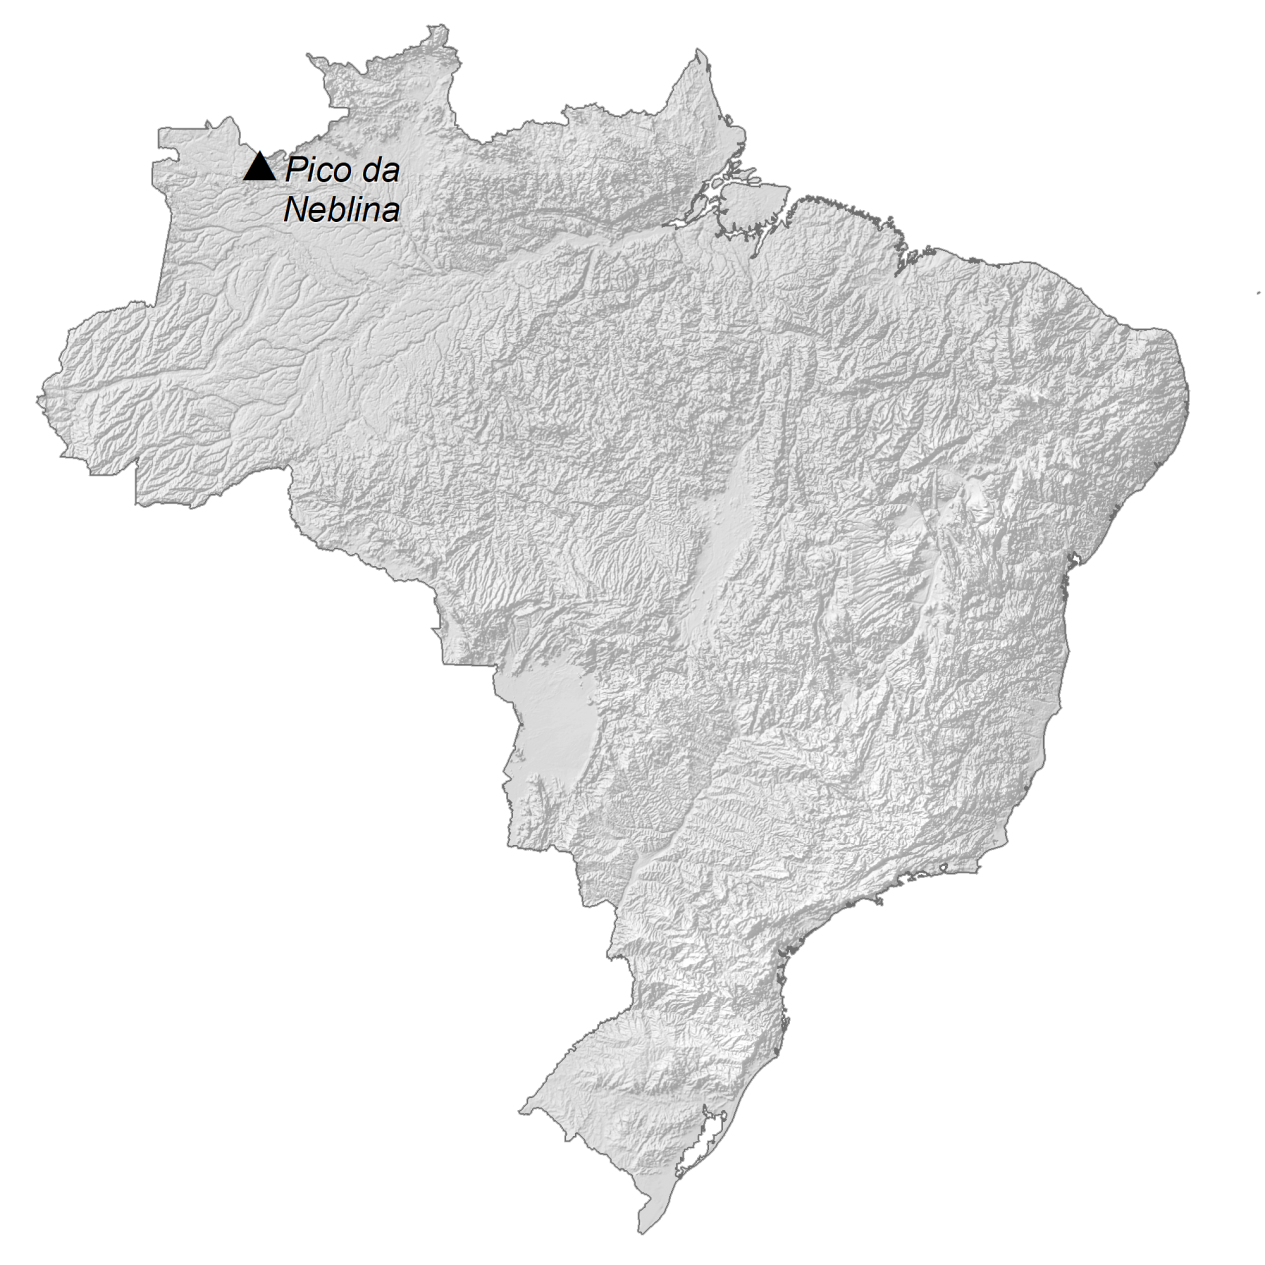 Brazil-Elevation-Map-1265x1265